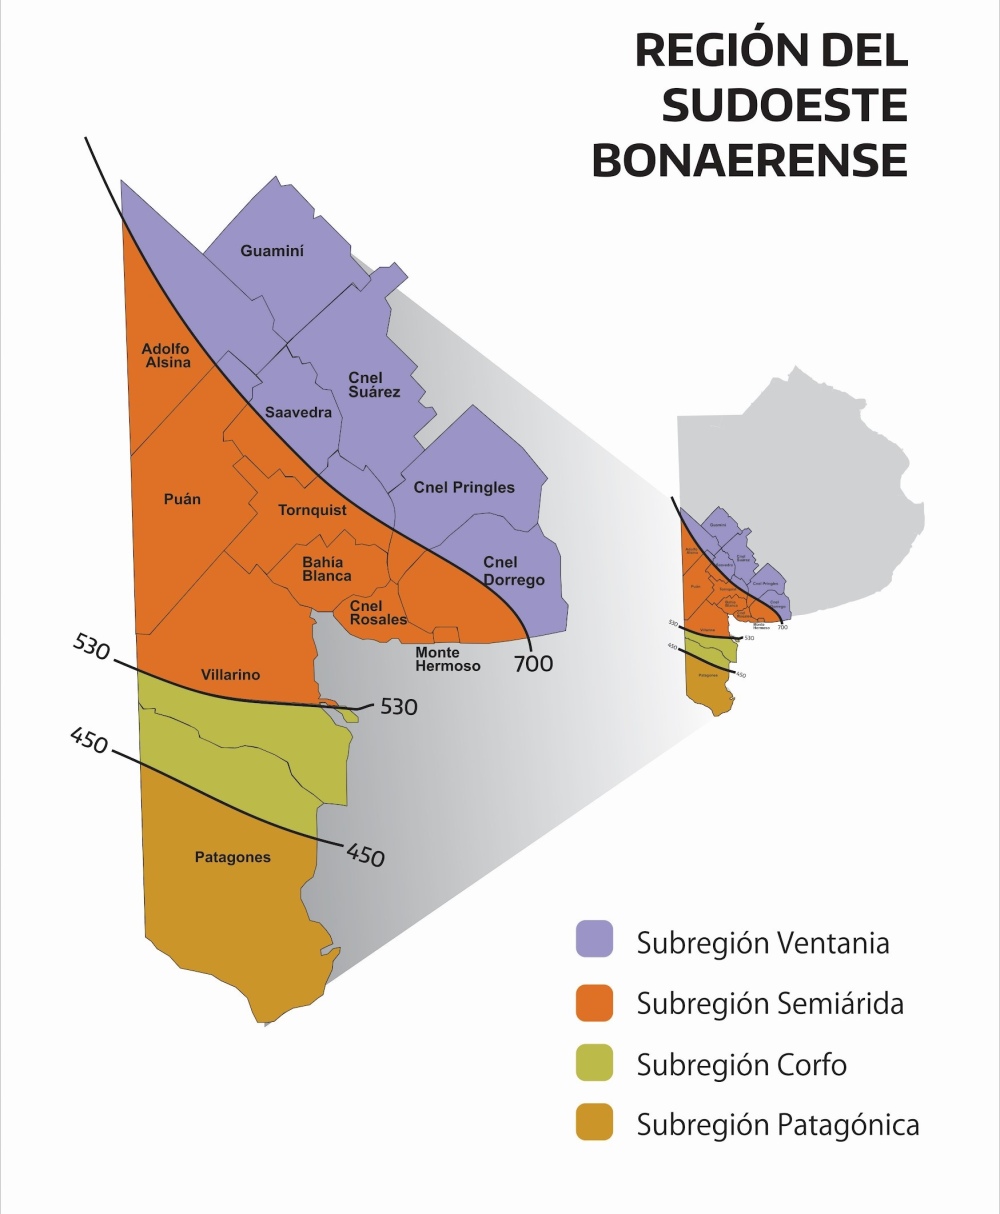 Reunión del Consejo Regional para el Desarrollo del Sudoeste Bonaerense